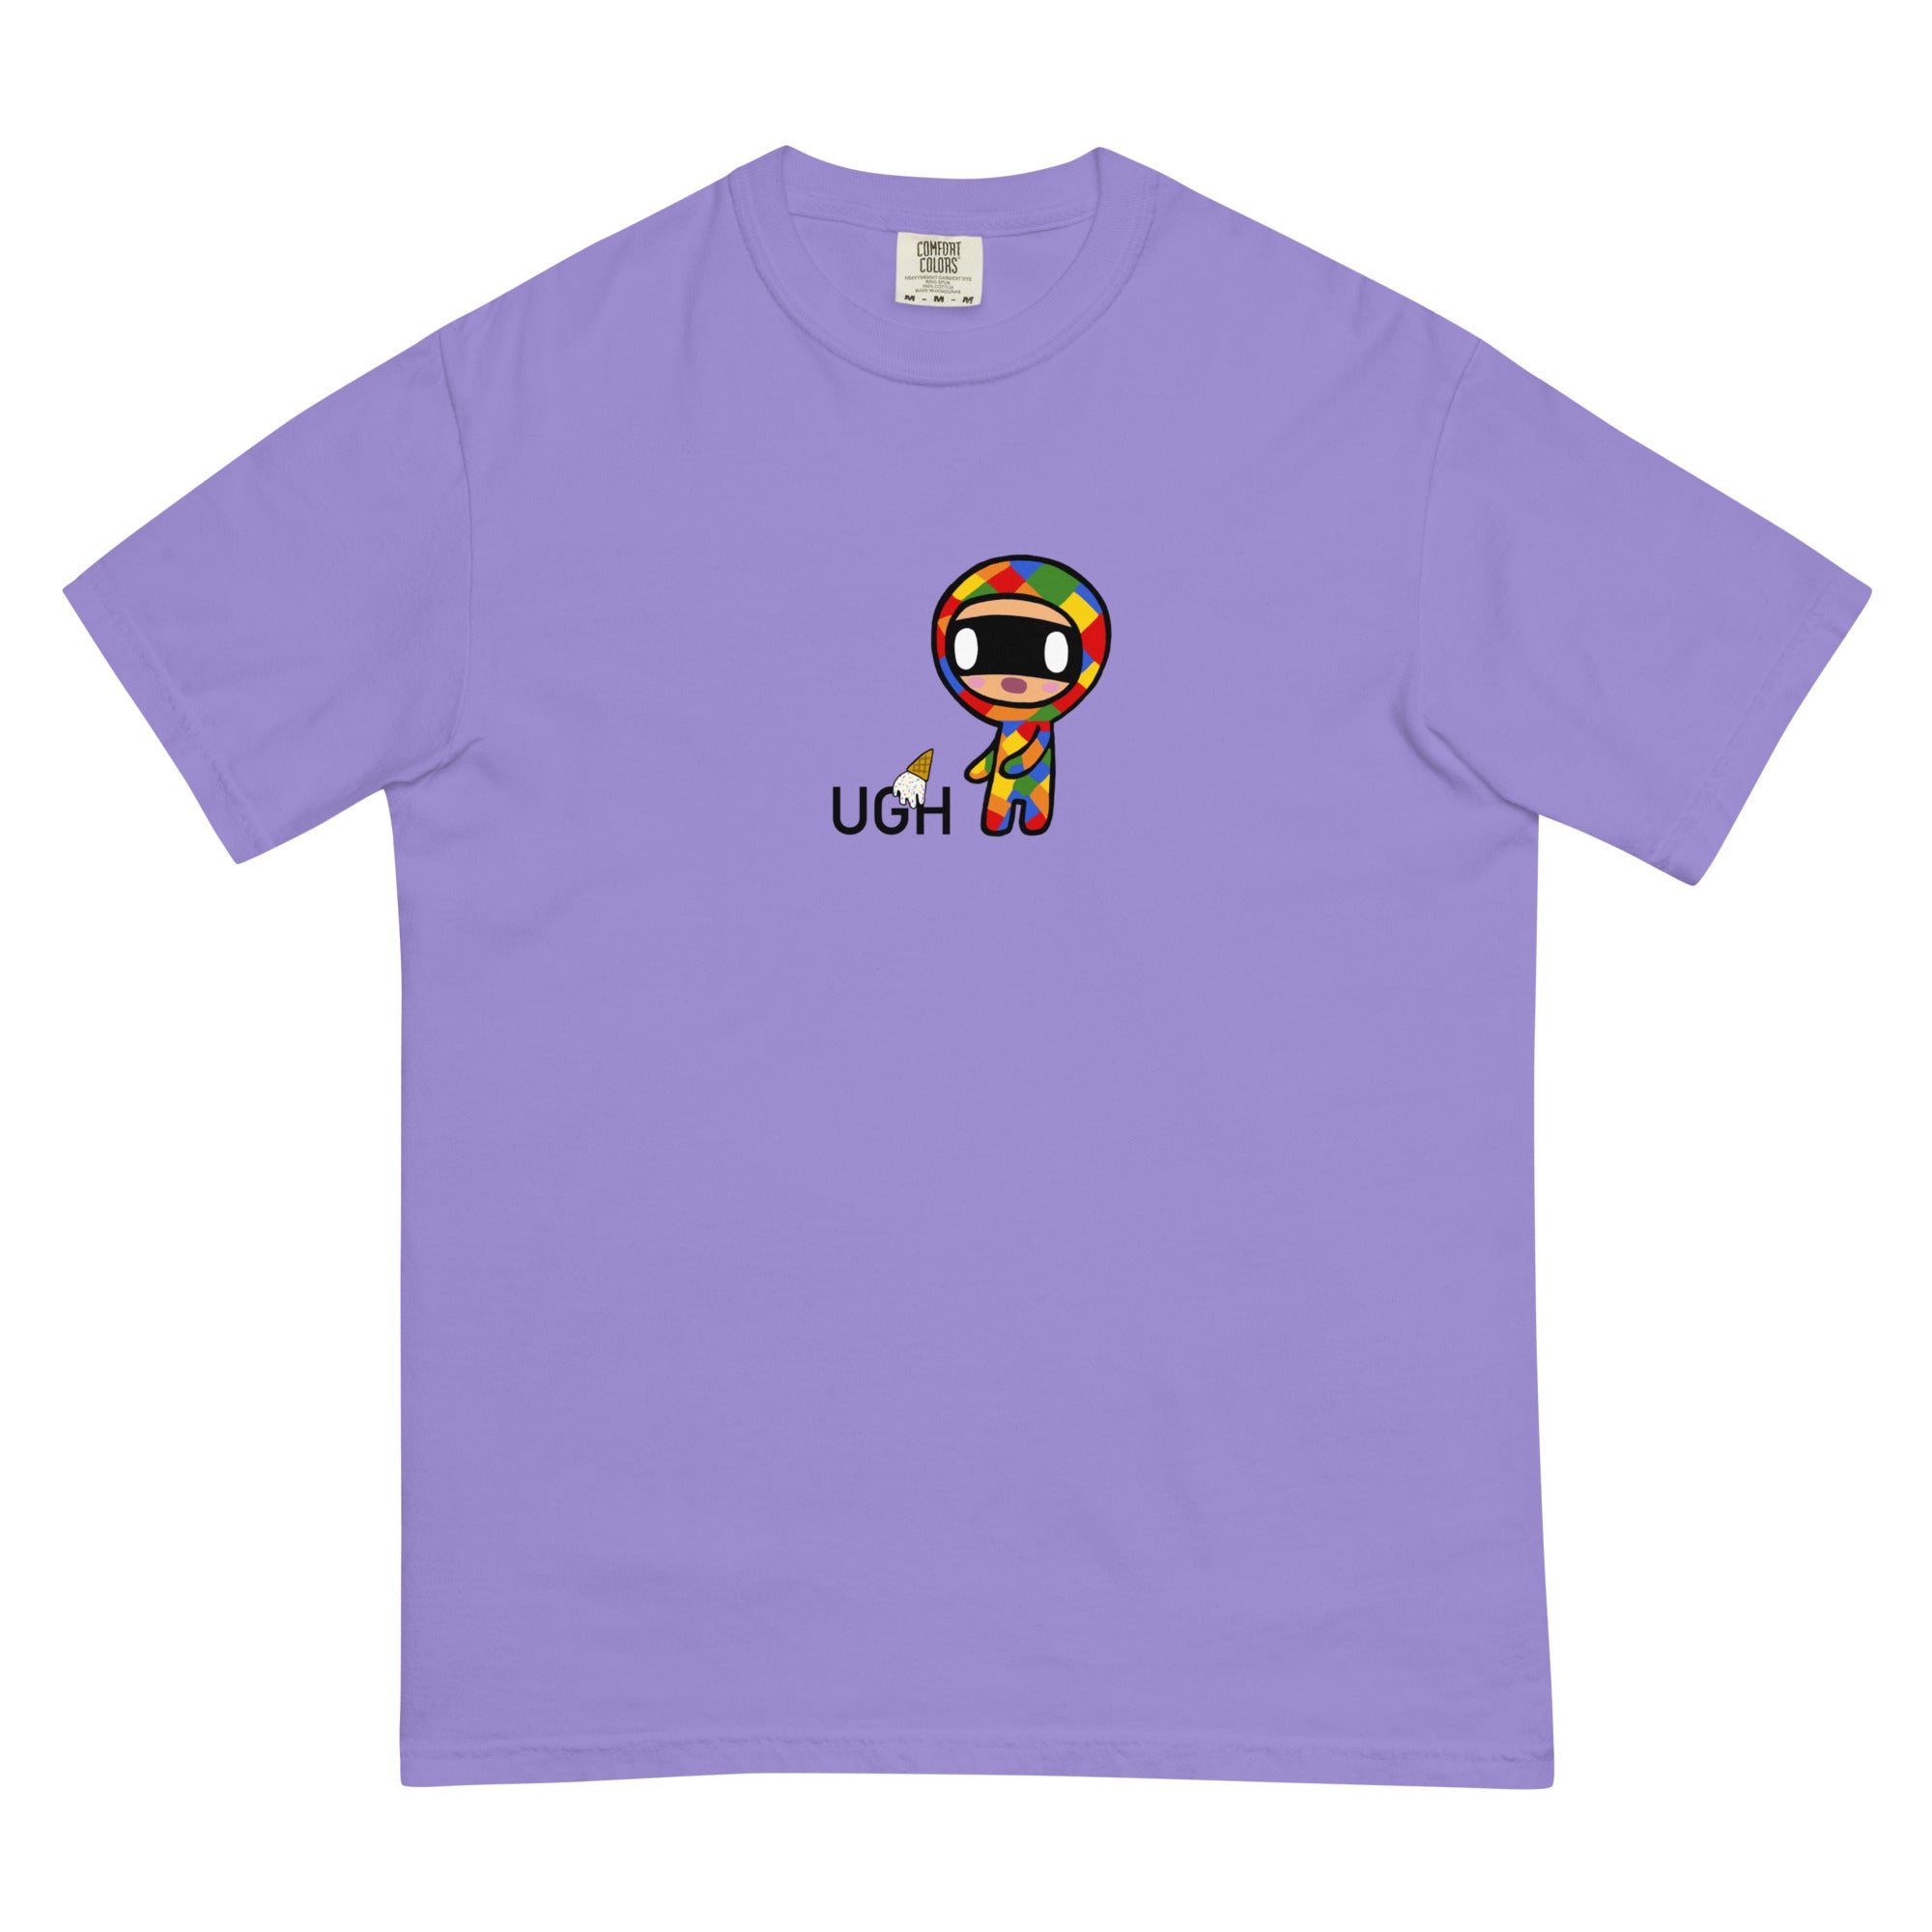 Pique Men’s garment-dyed heavyweight t-shirt